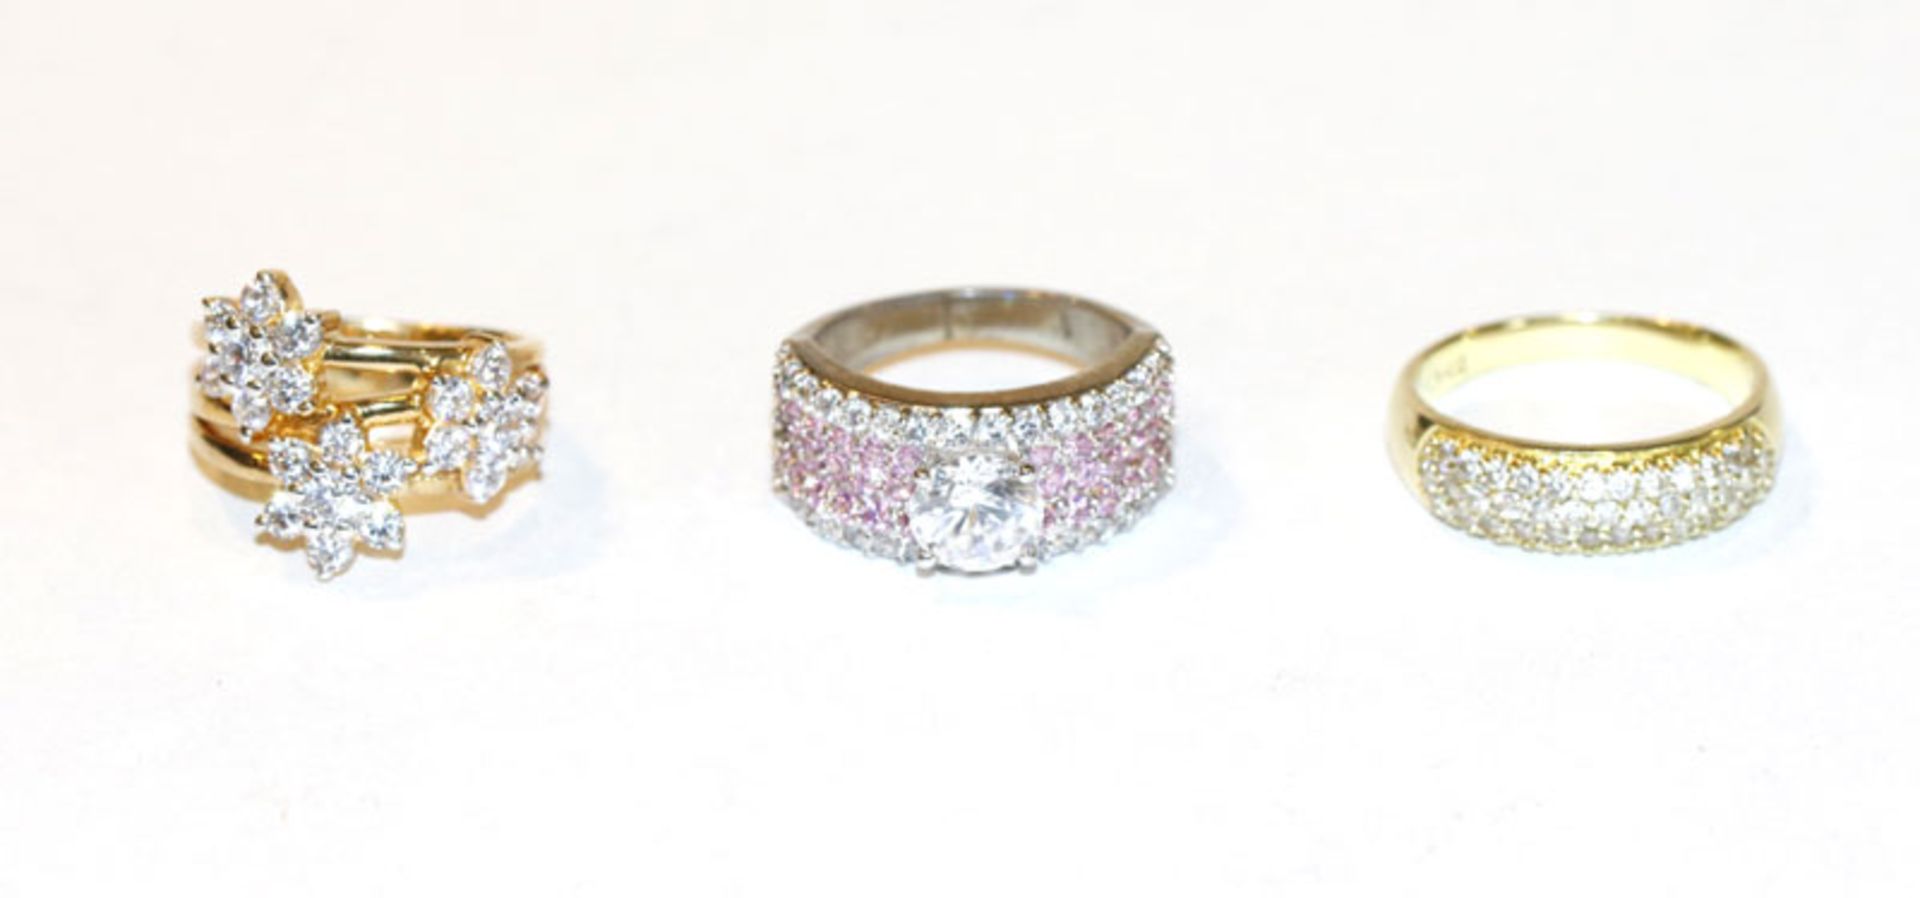 2 Sterlingsilber/vergoldete Ringe mit Glassteinen, Gr. 57/63 und ein Sterlingsilber Ring mit